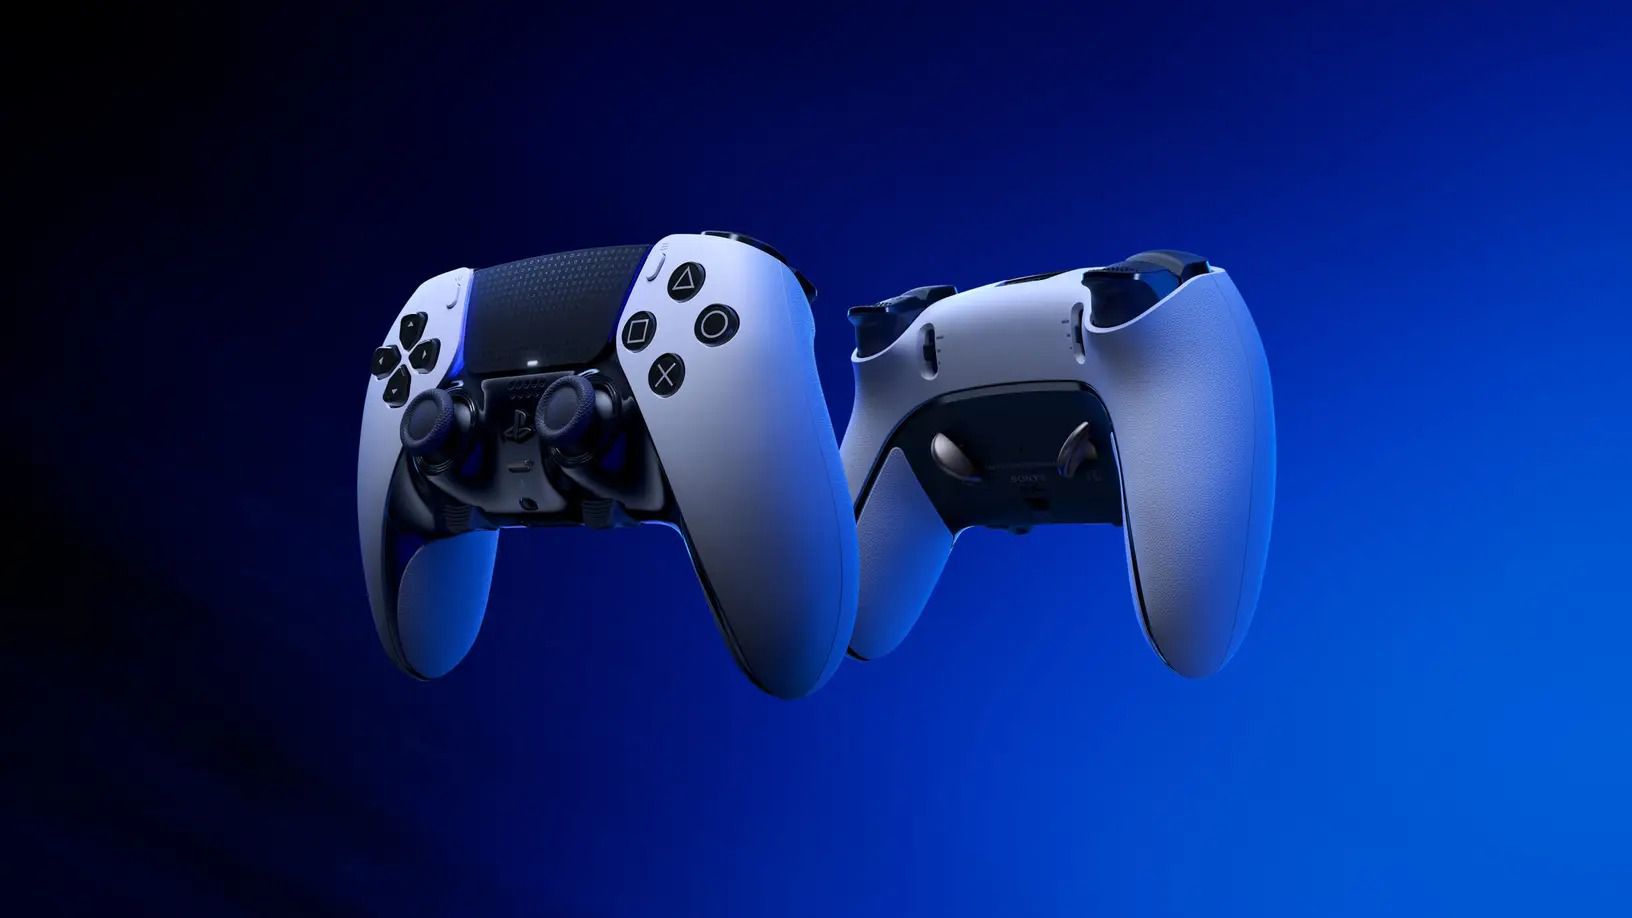 99%” dos jogos de PS4 testados serão compatíveis com PS5, diz CEO